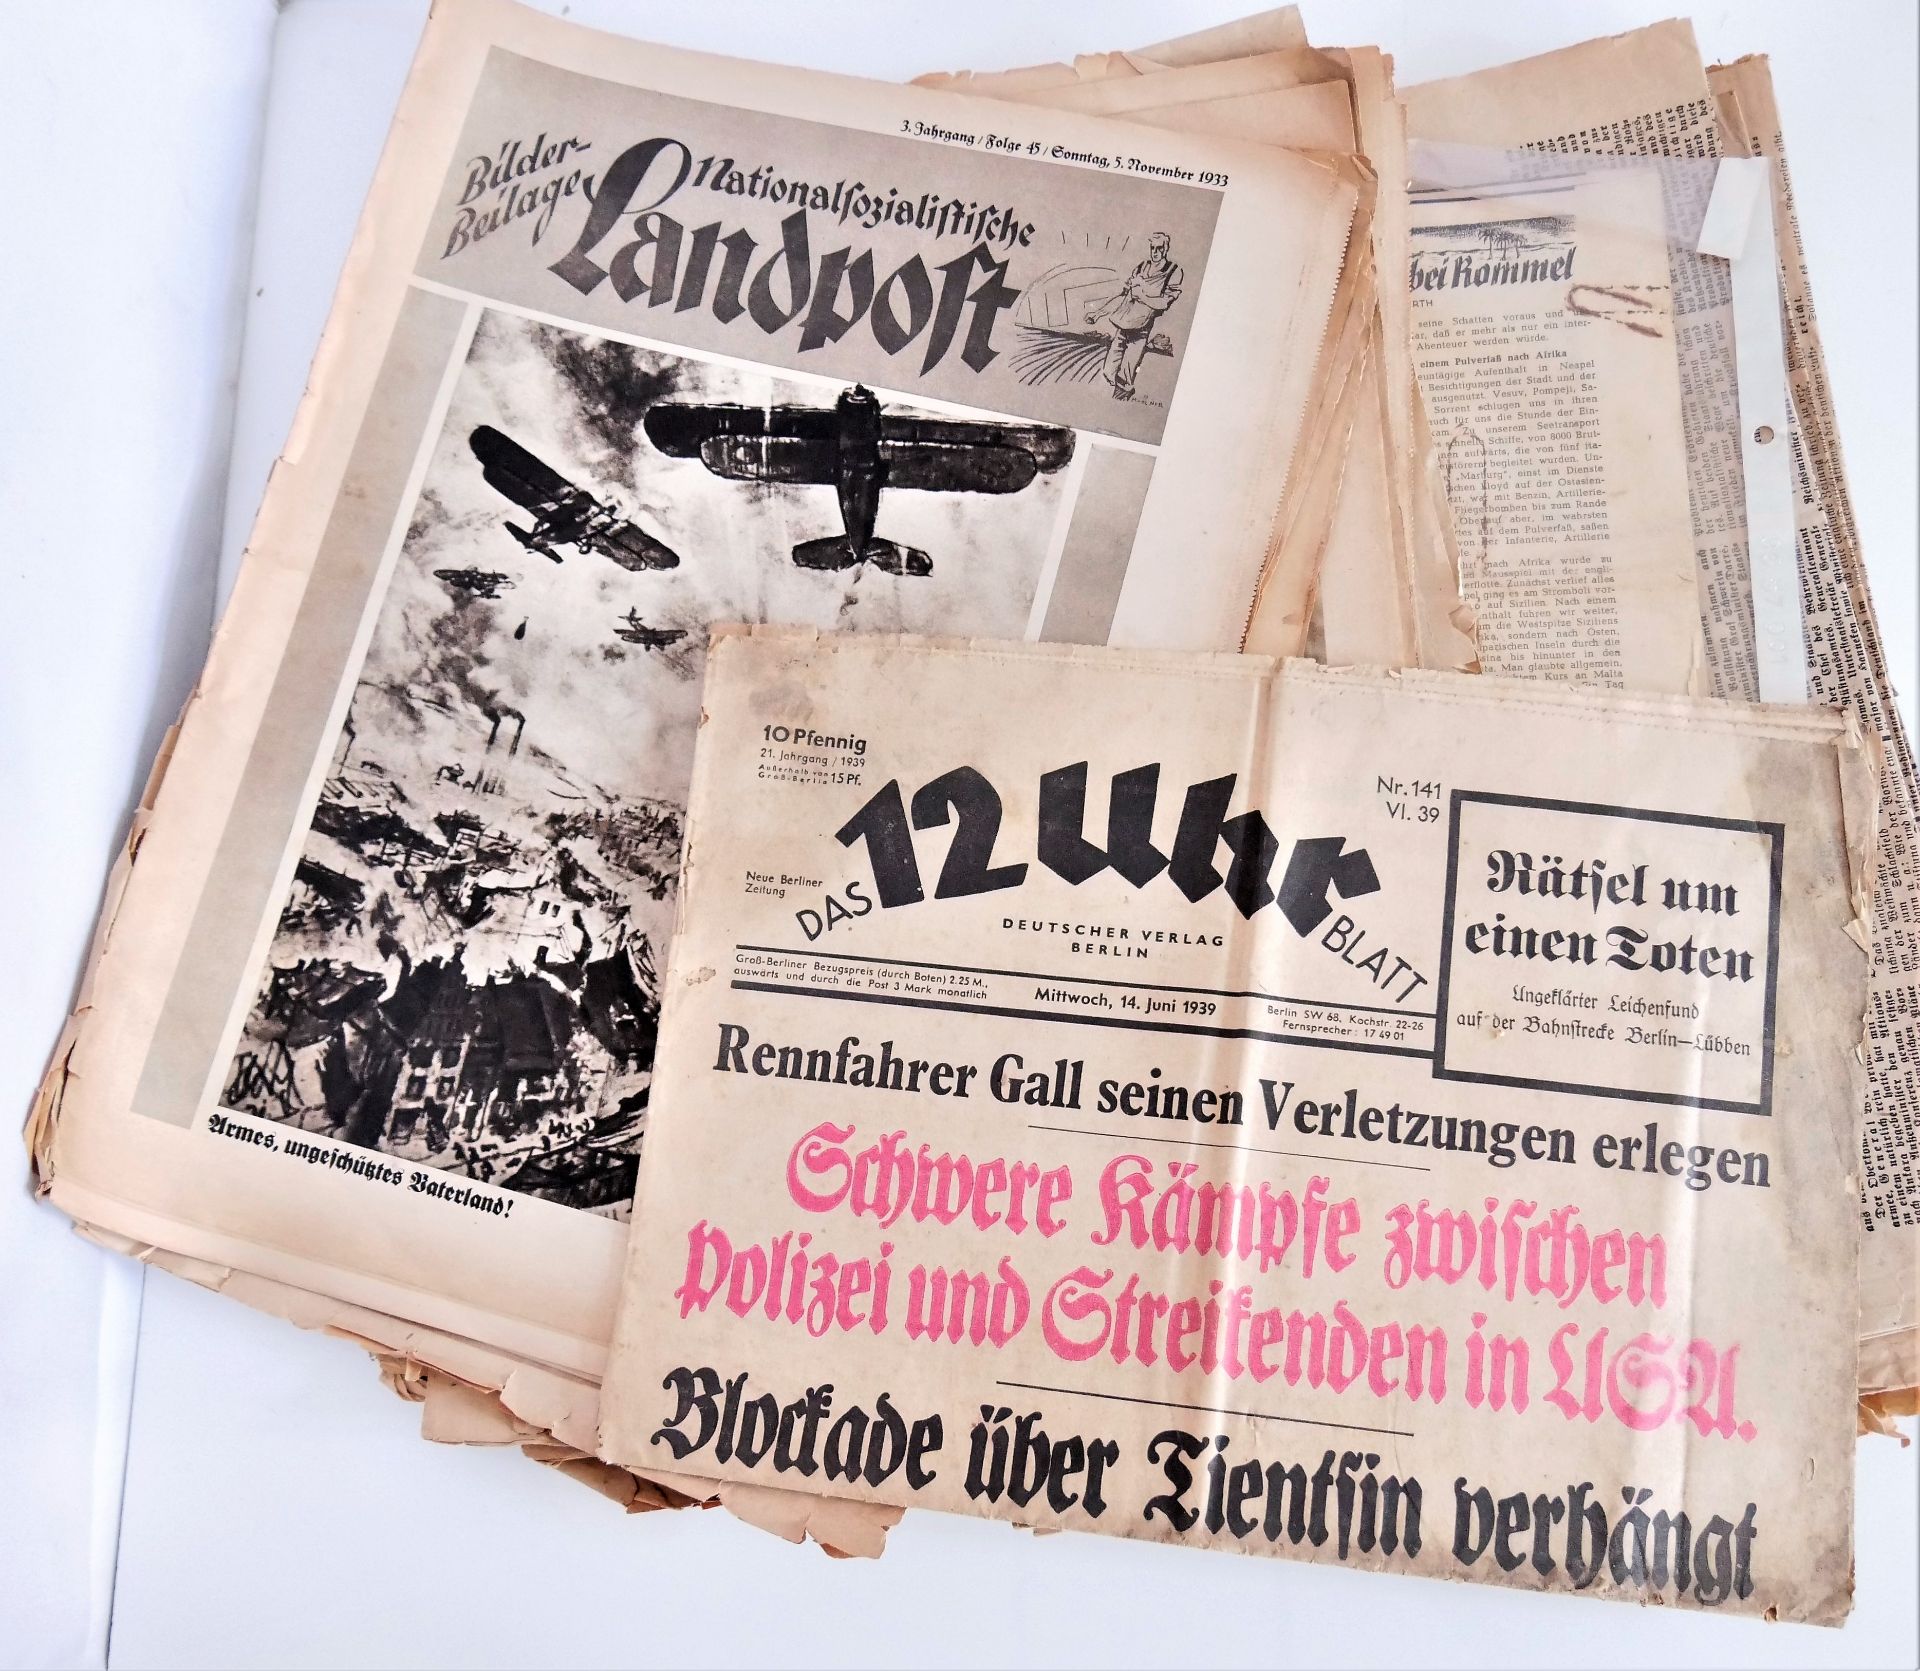 Lot alte Zeitungen und Magazine, dabei Nationalsozialistische Landpost, Das 12 Uhr Blatt, Rhein